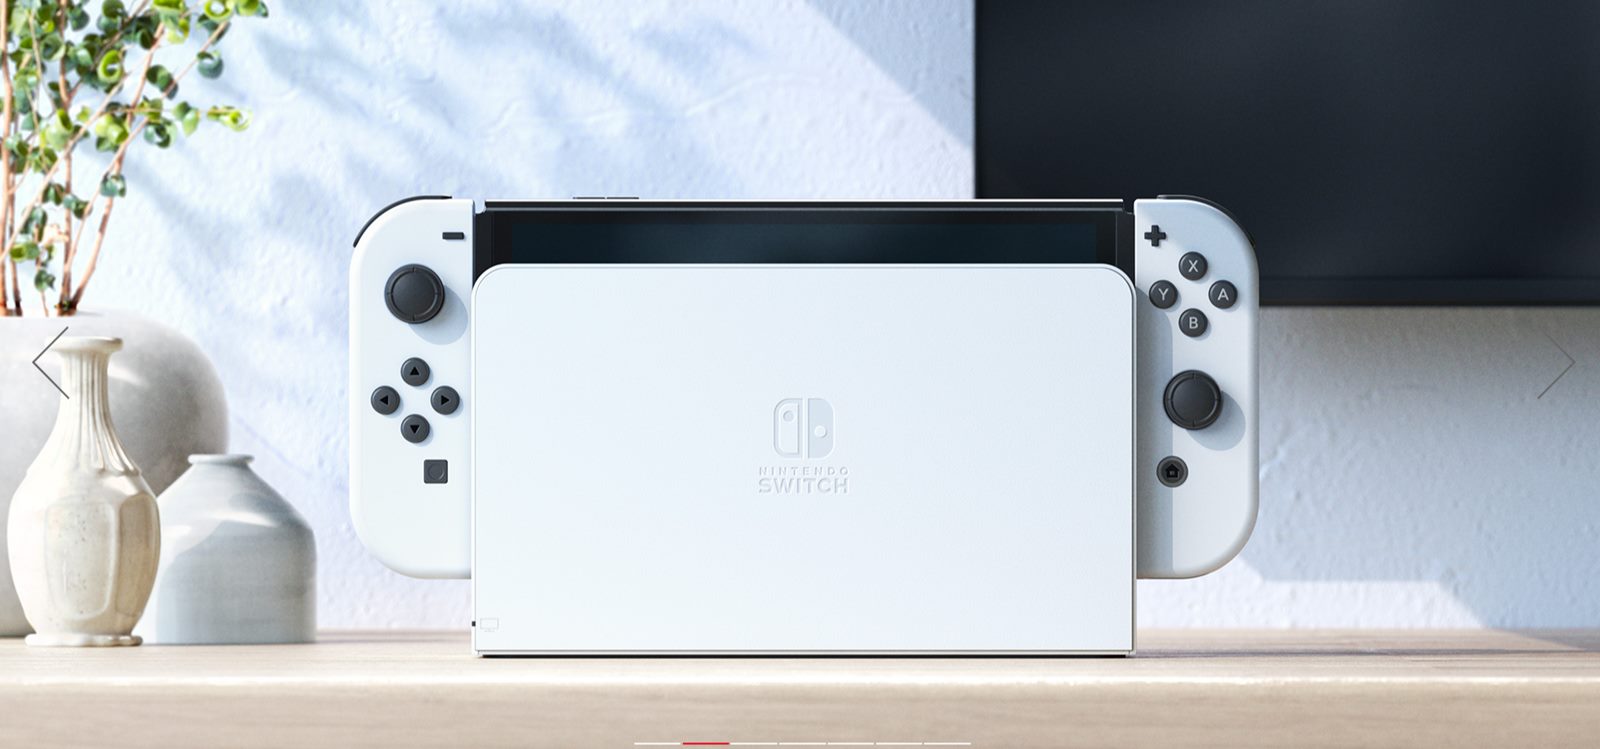 新型Nintendo Switchは、新たなCPUは搭載せずメモリの上積みもなし 